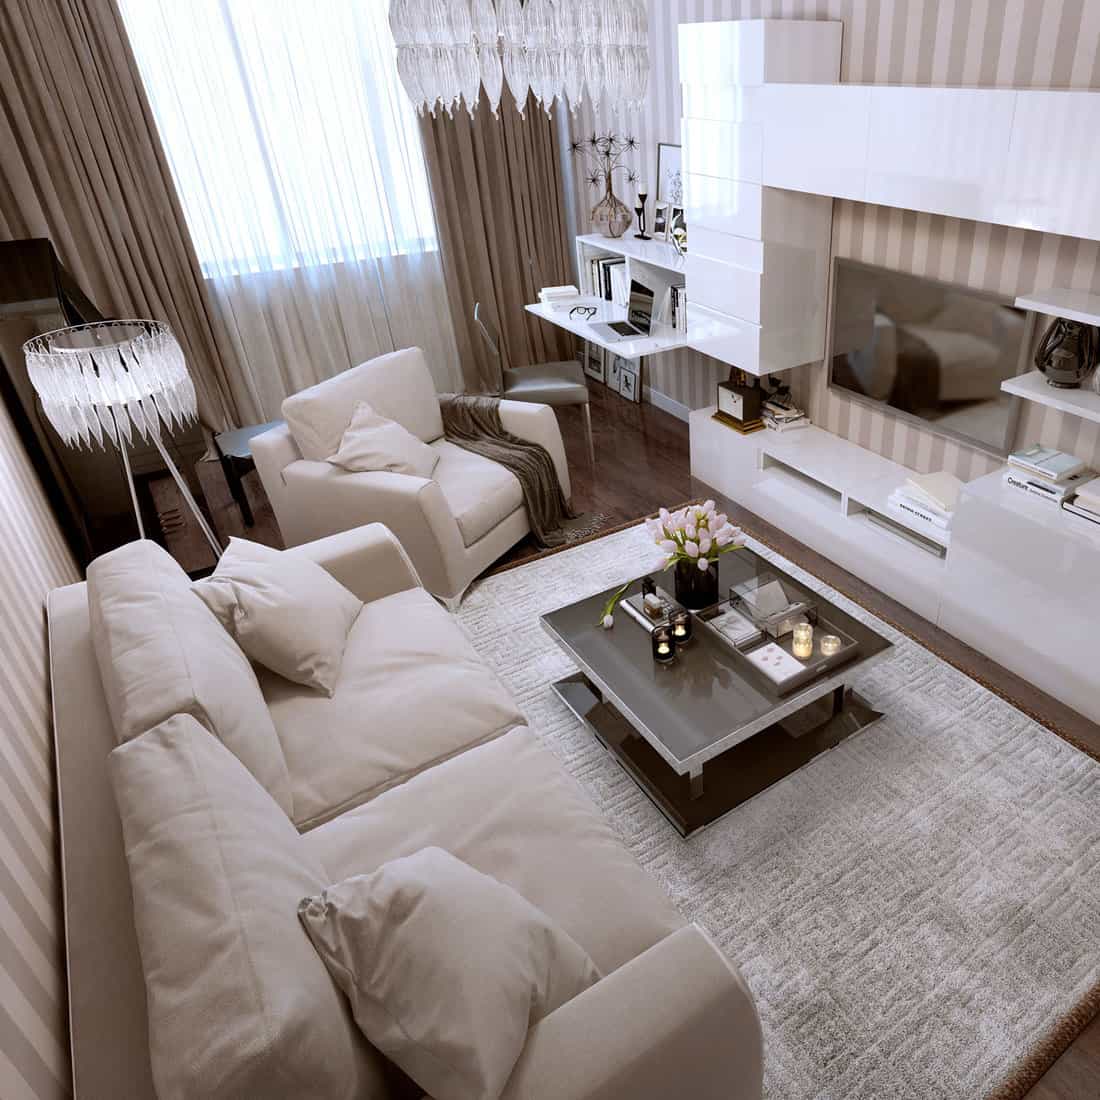 Luxurious studio condominium living room with brown curtain